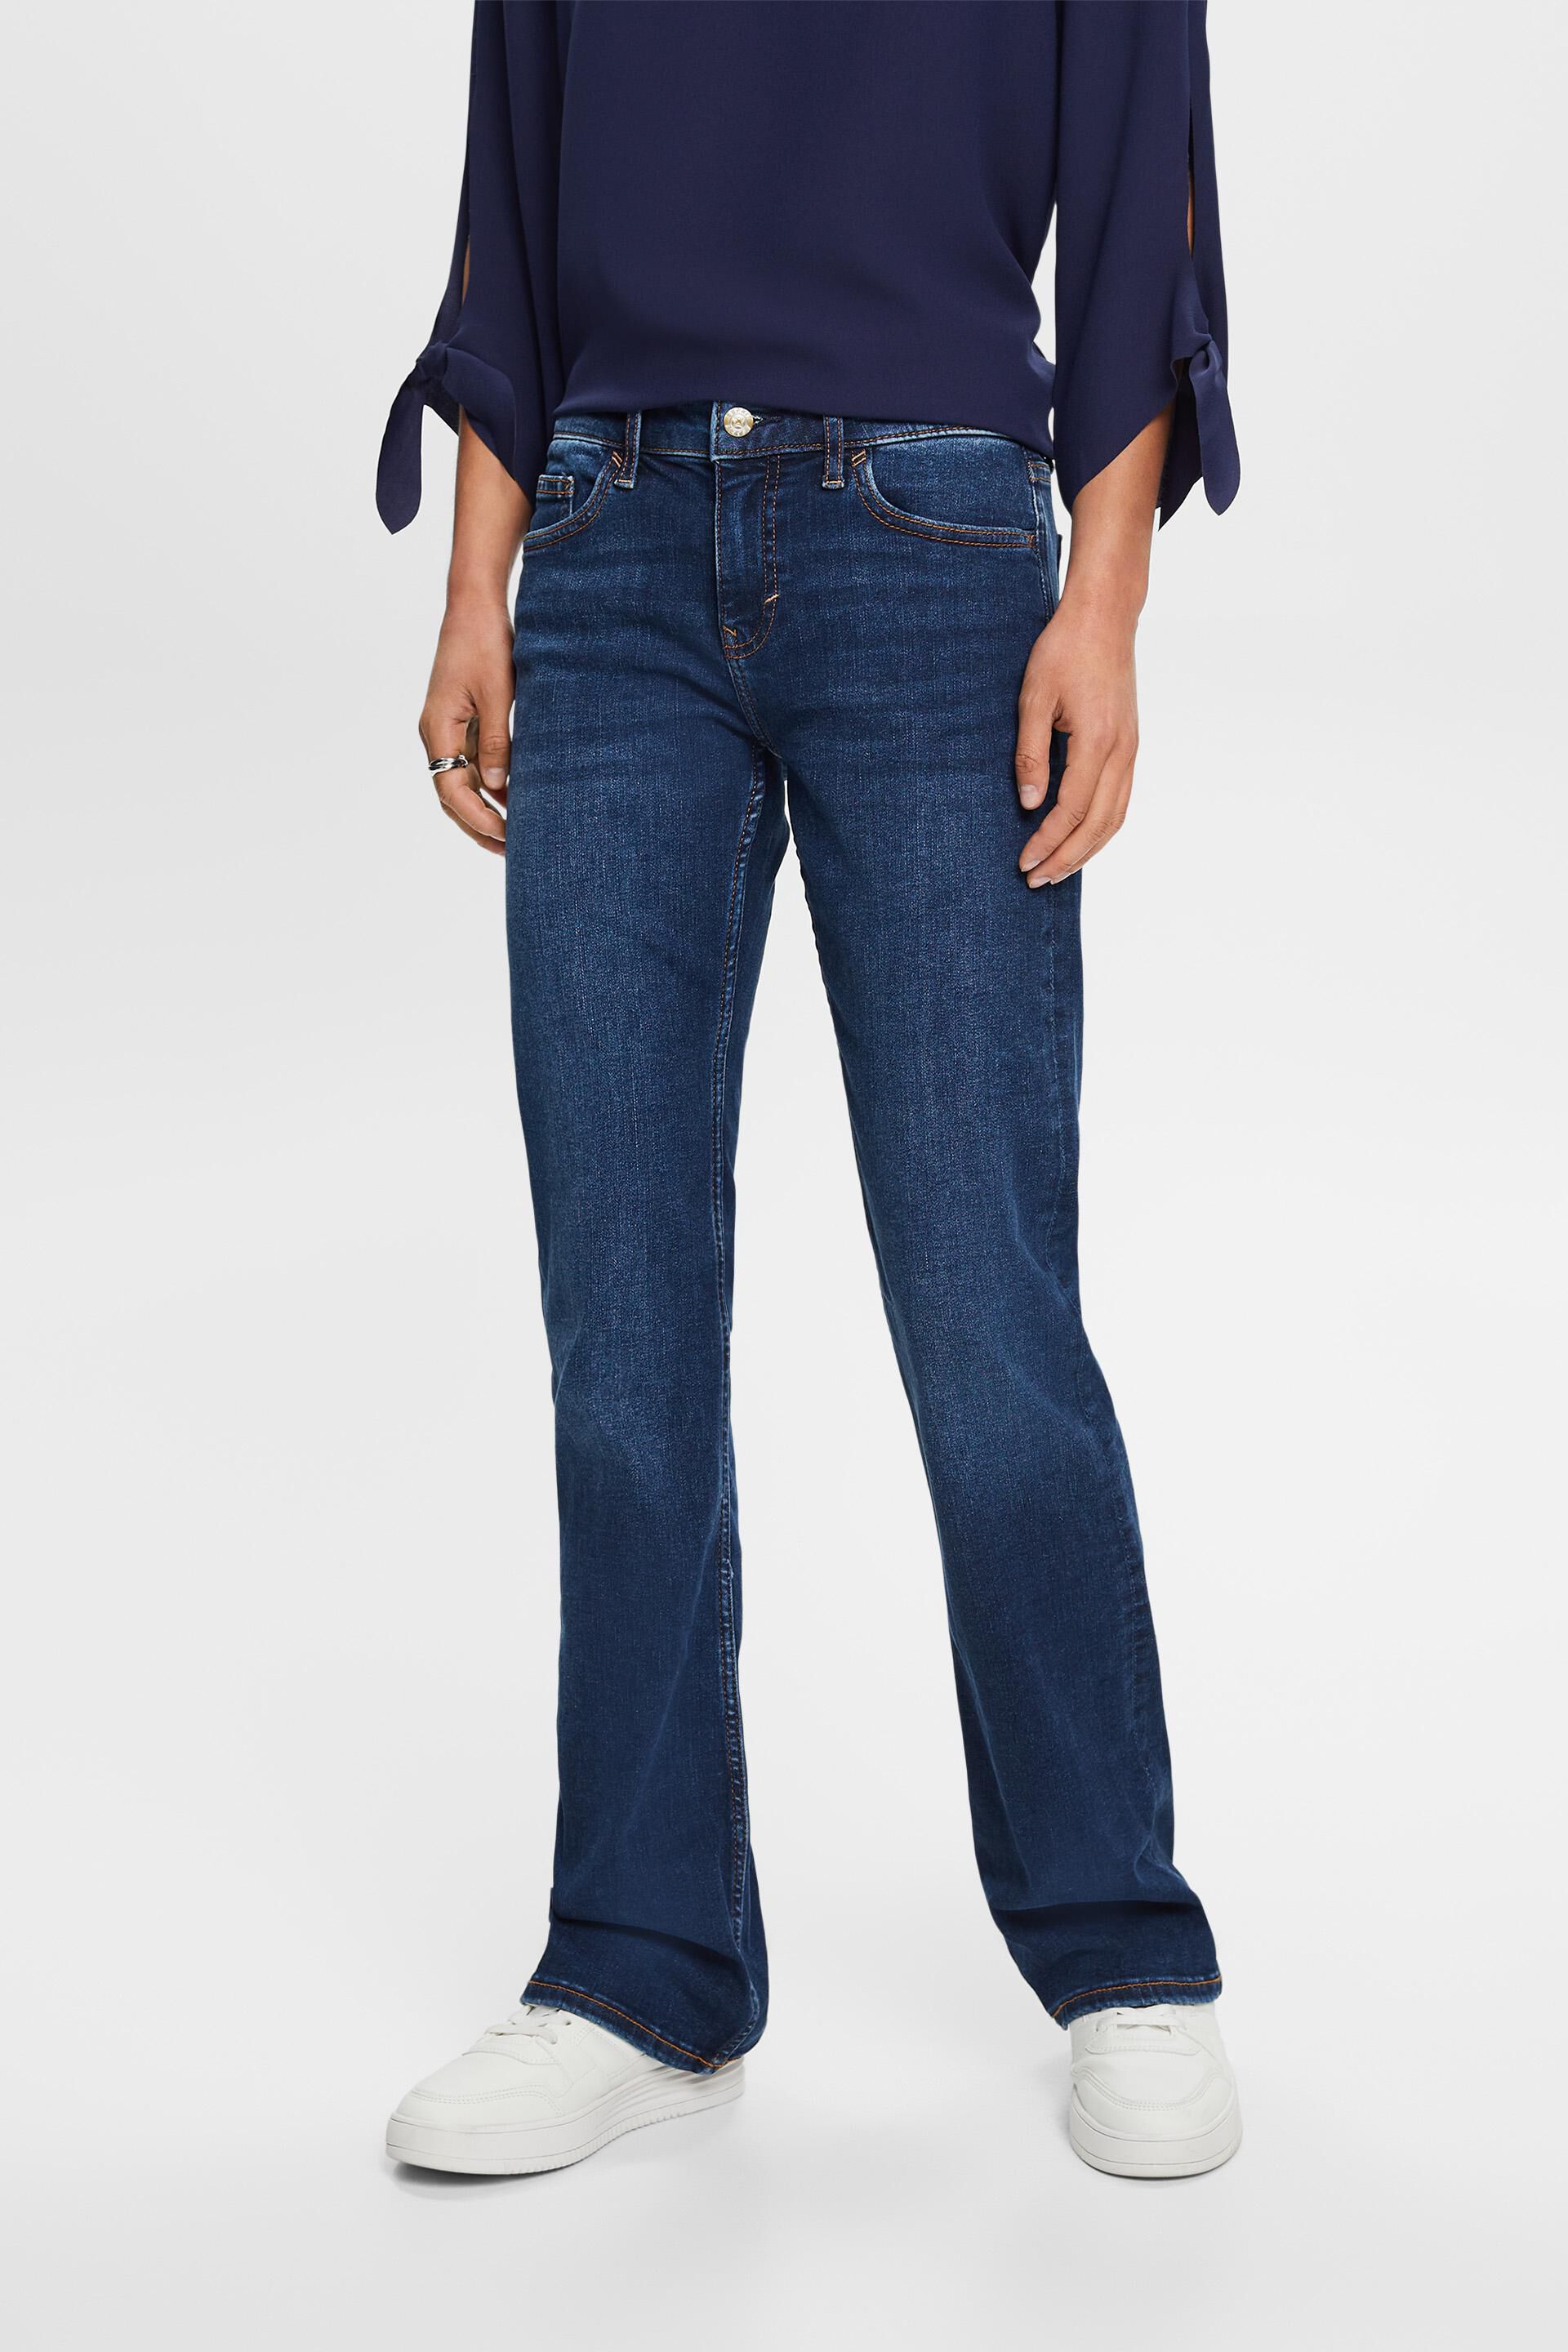 Bootcut-Jeans mit mittlerer Leibhöhe